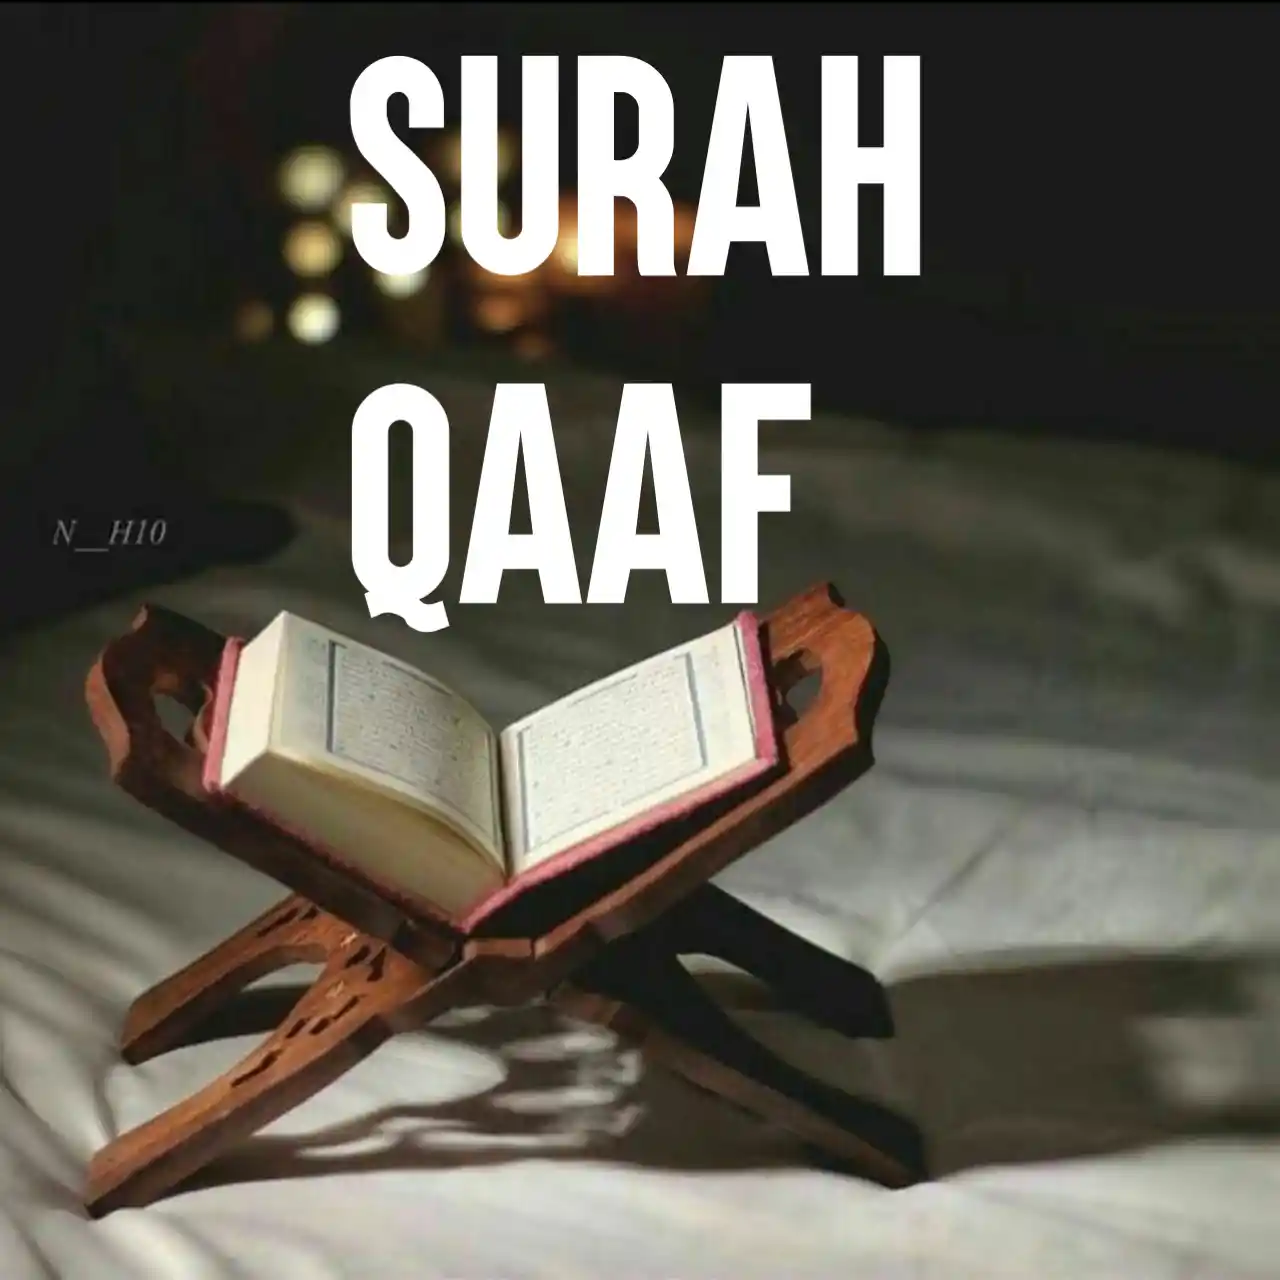 Surah Qaaf